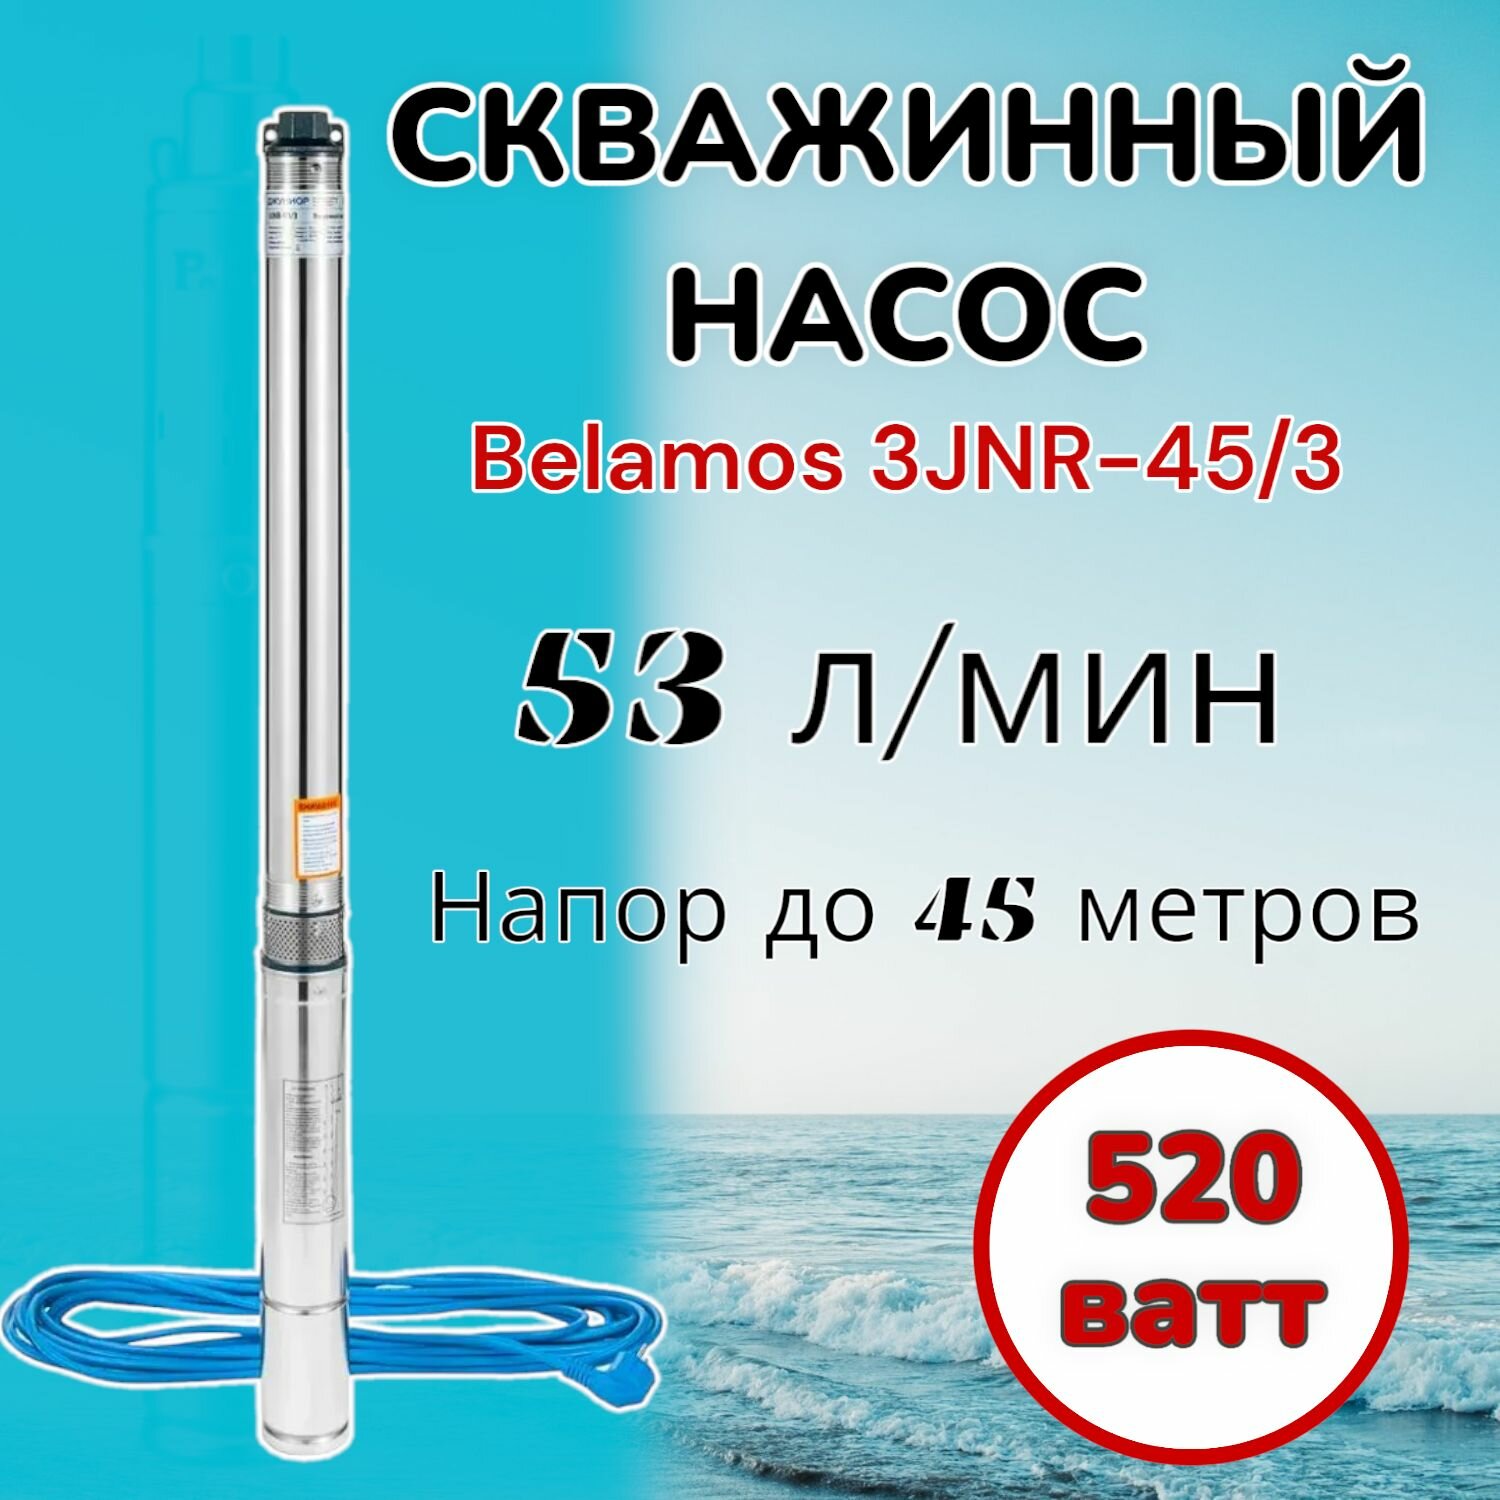 Скважинный насос Belamos 3JNR-45/3 (диаметр 78мм, кабель 15м) для колодцев, скважин, полива